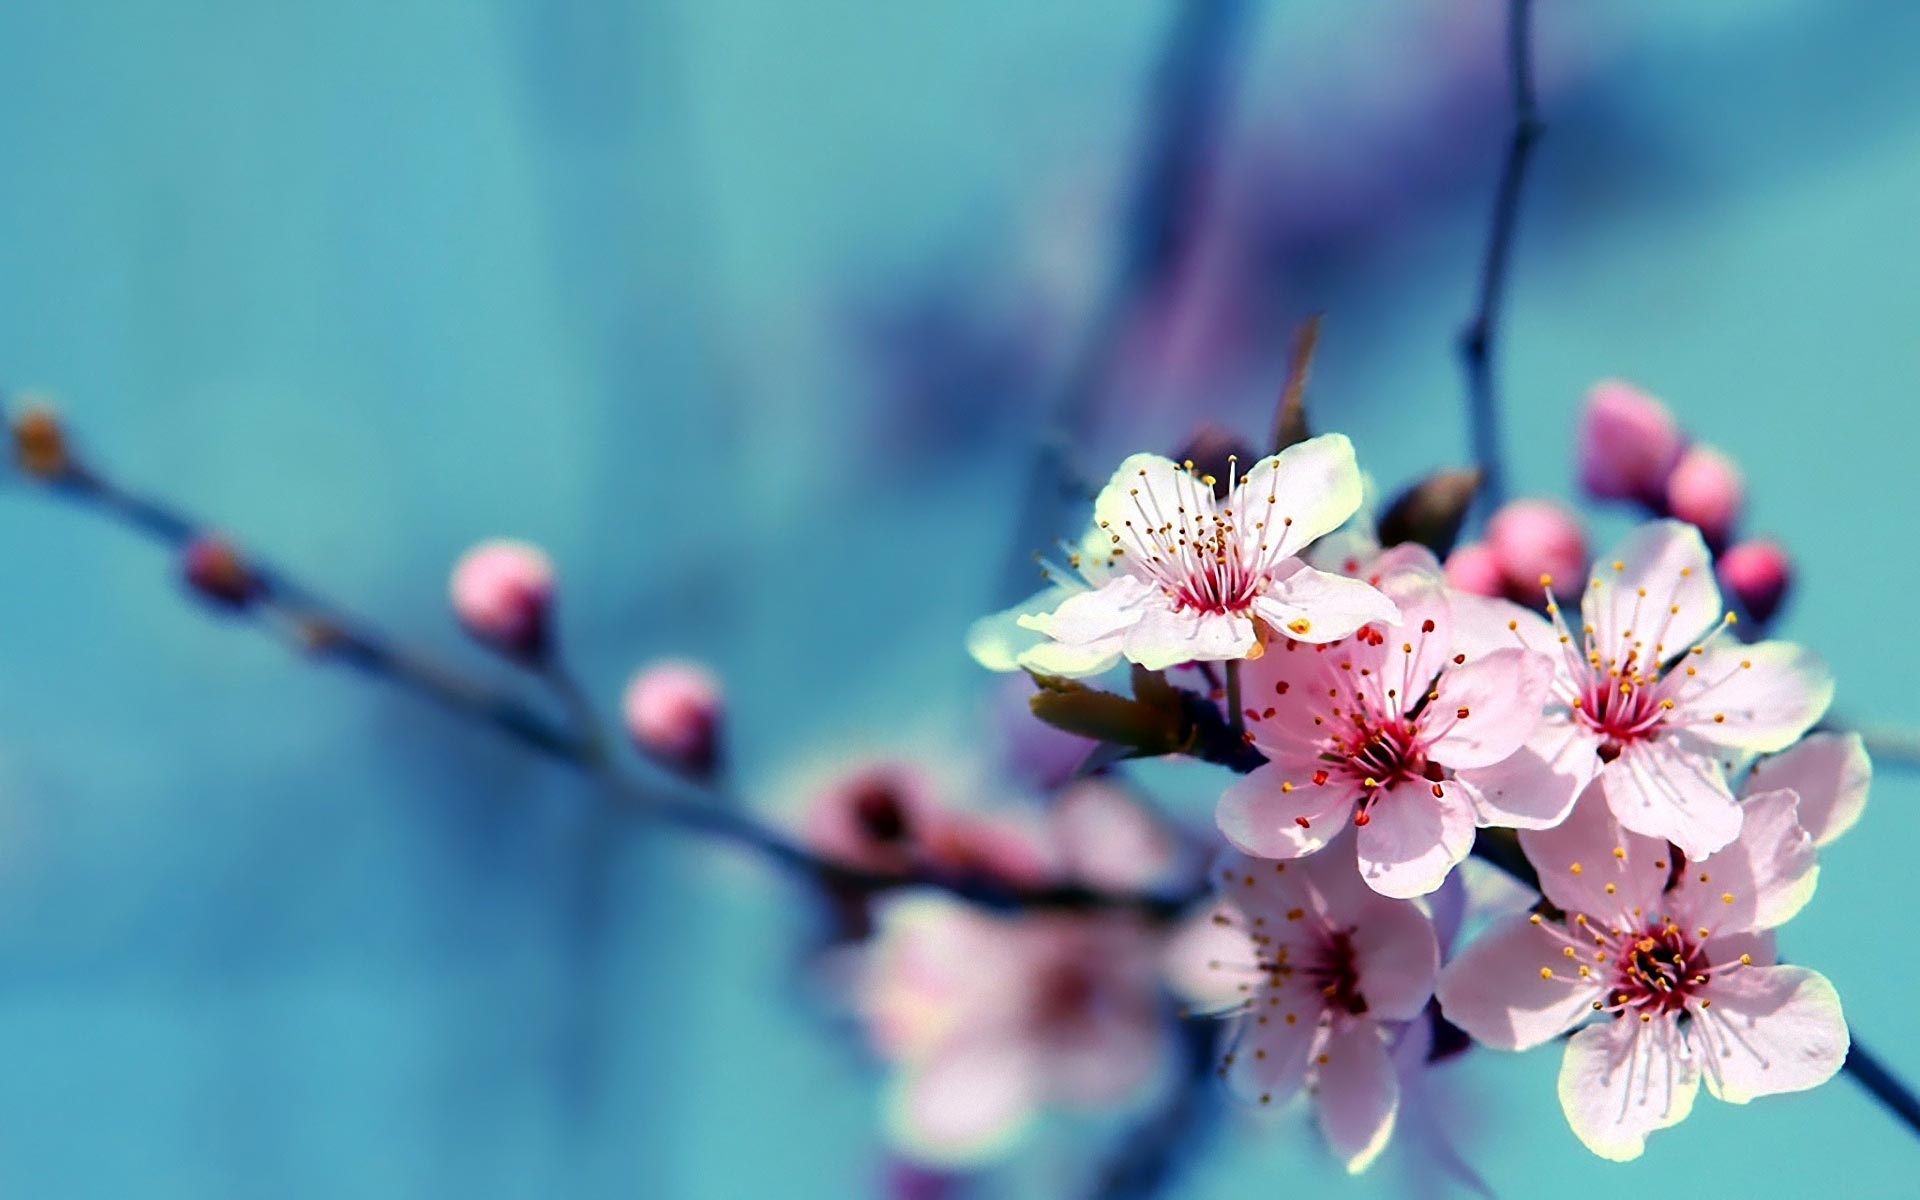 flower wallpaper,flower,blossom,branch,spring,cherry blossom